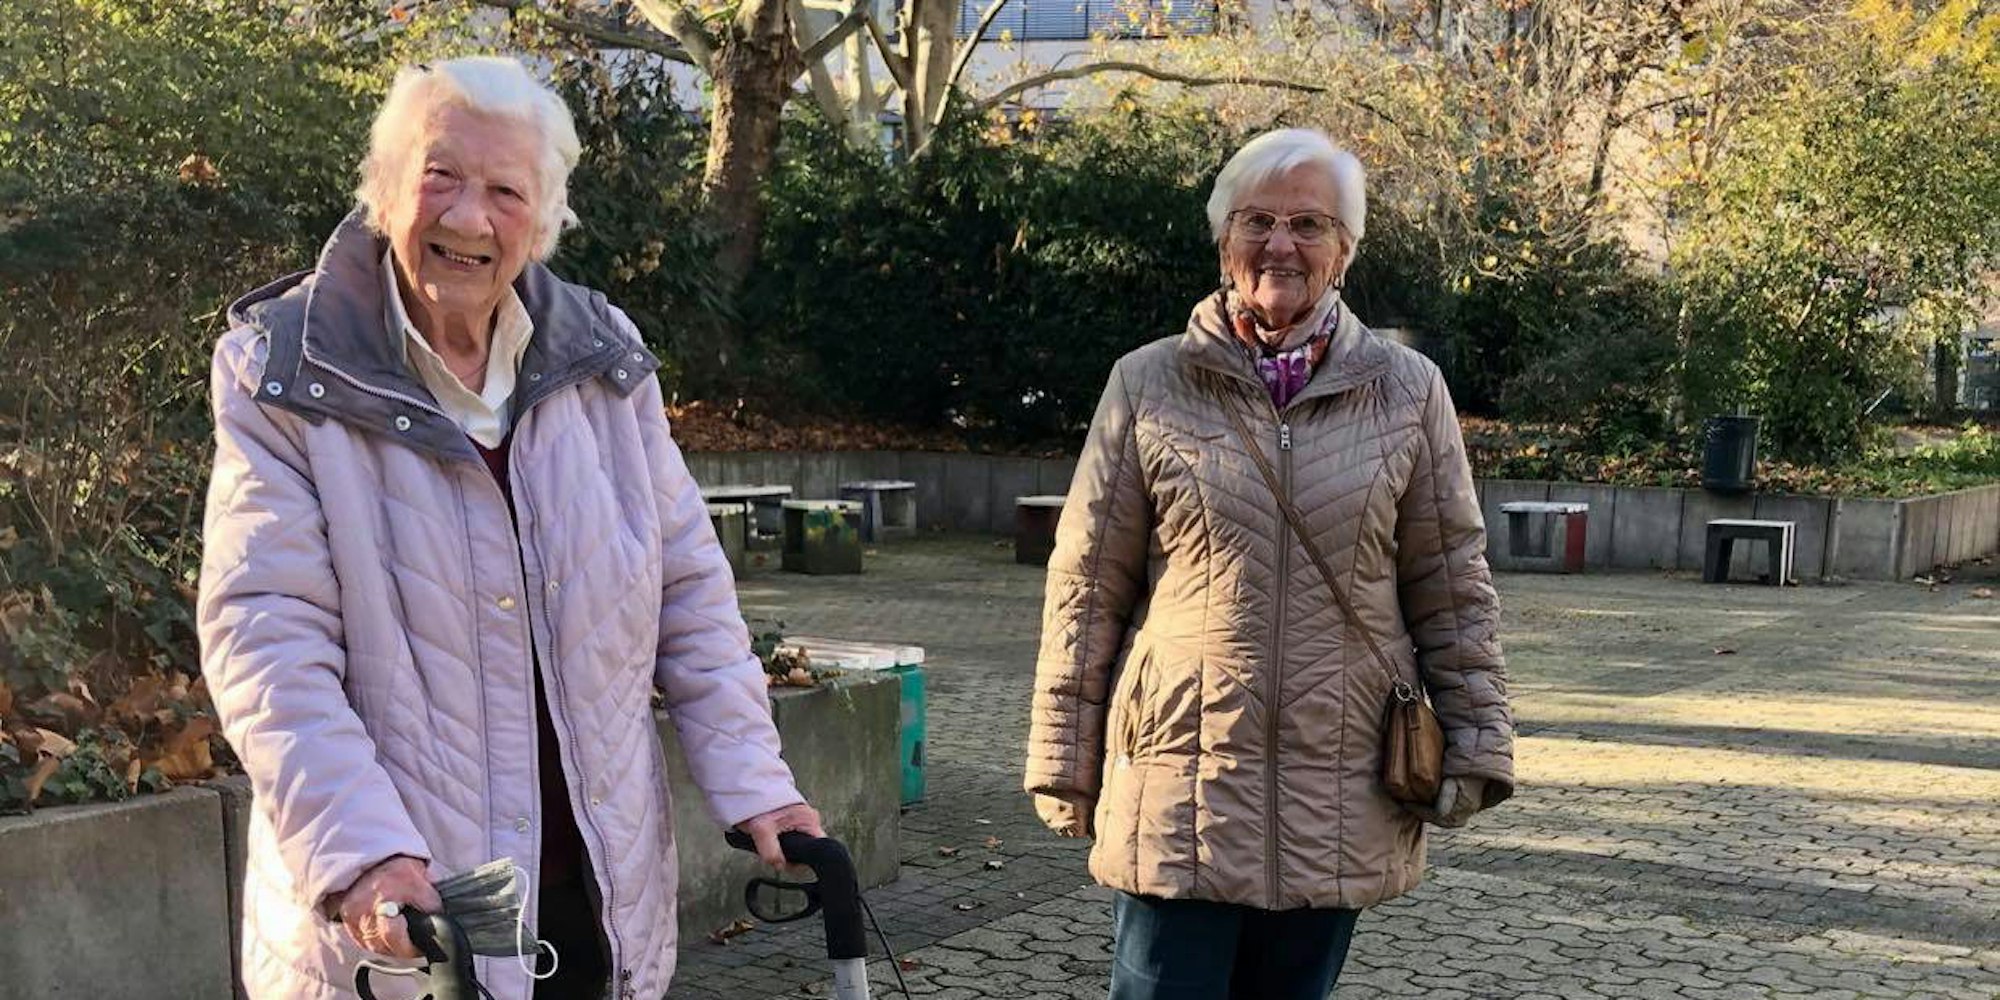 Therese van Waardenburg (l.) und Barbara Beyer haben sich an die veränderten Gegebenheiten gewöhnt und halten sich an die Corona-Regeln. Trotz ihres Alters bleiben sie gelassen.